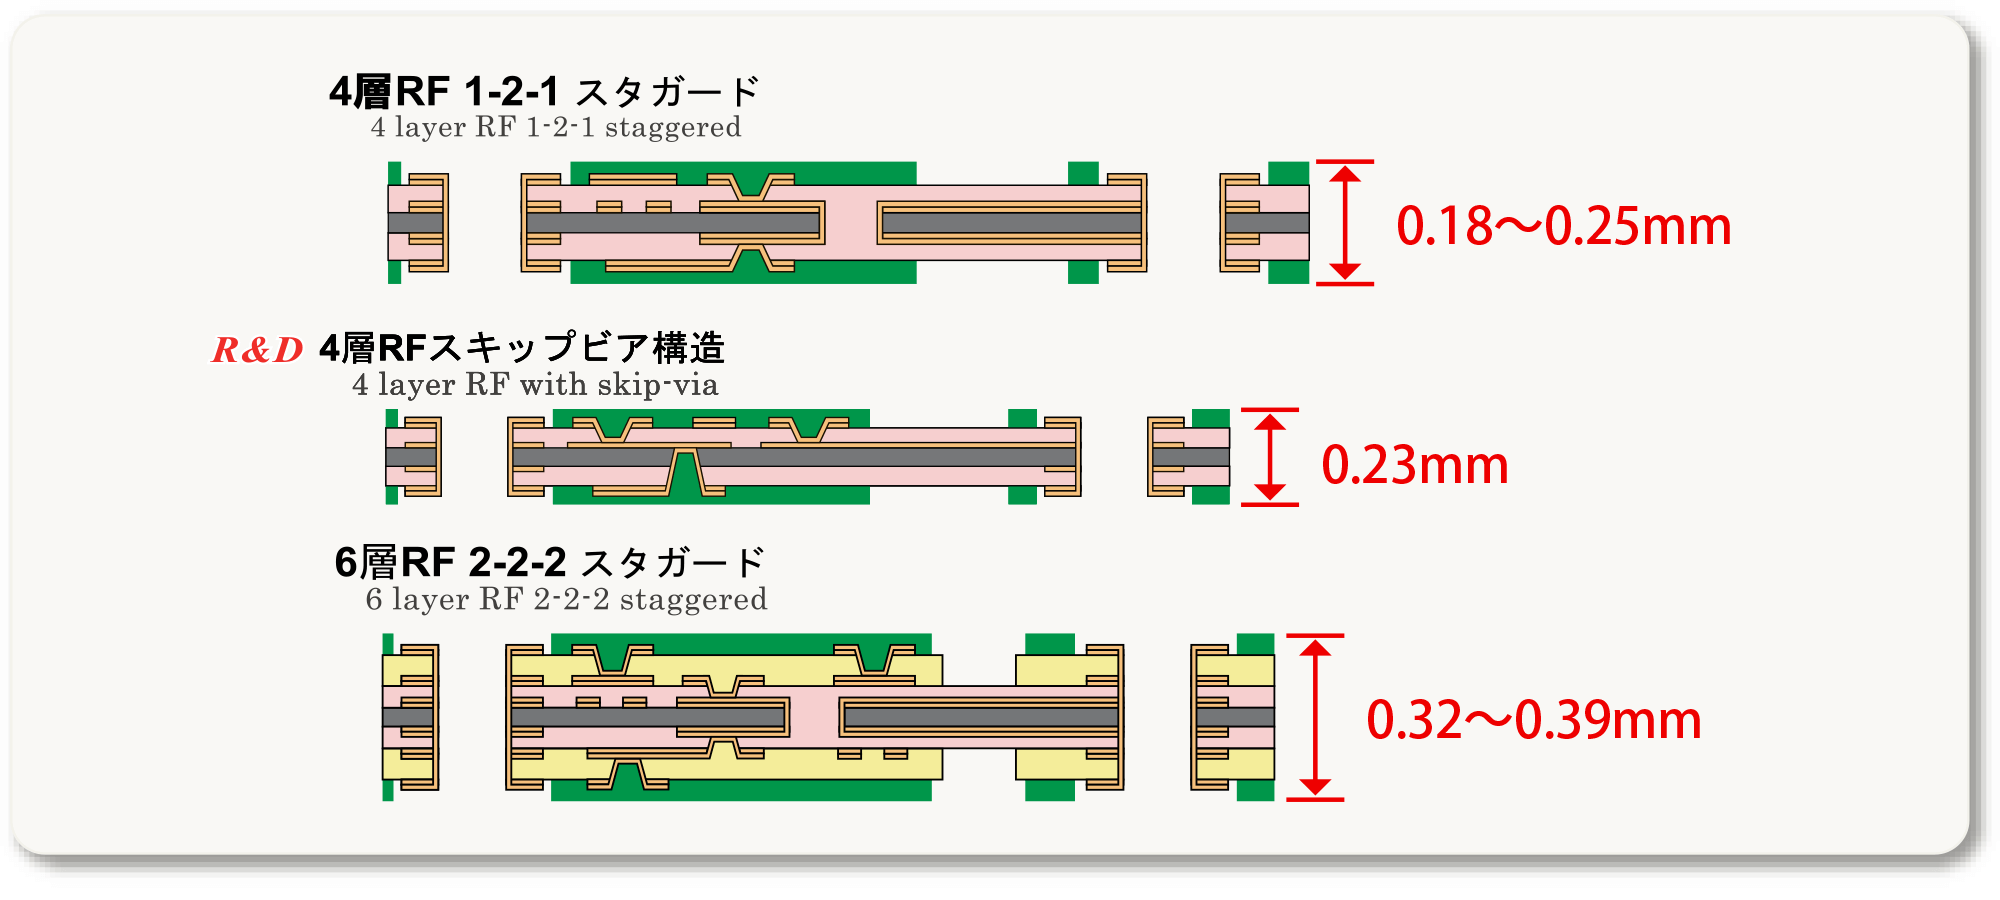 4層RF 1-2-1 スタガード：0.18〜0.25mm、R&D 4層RFスキップビア構造：0.23mm、6層RF 2-2-2 スタガード（0.32〜0.39mm）